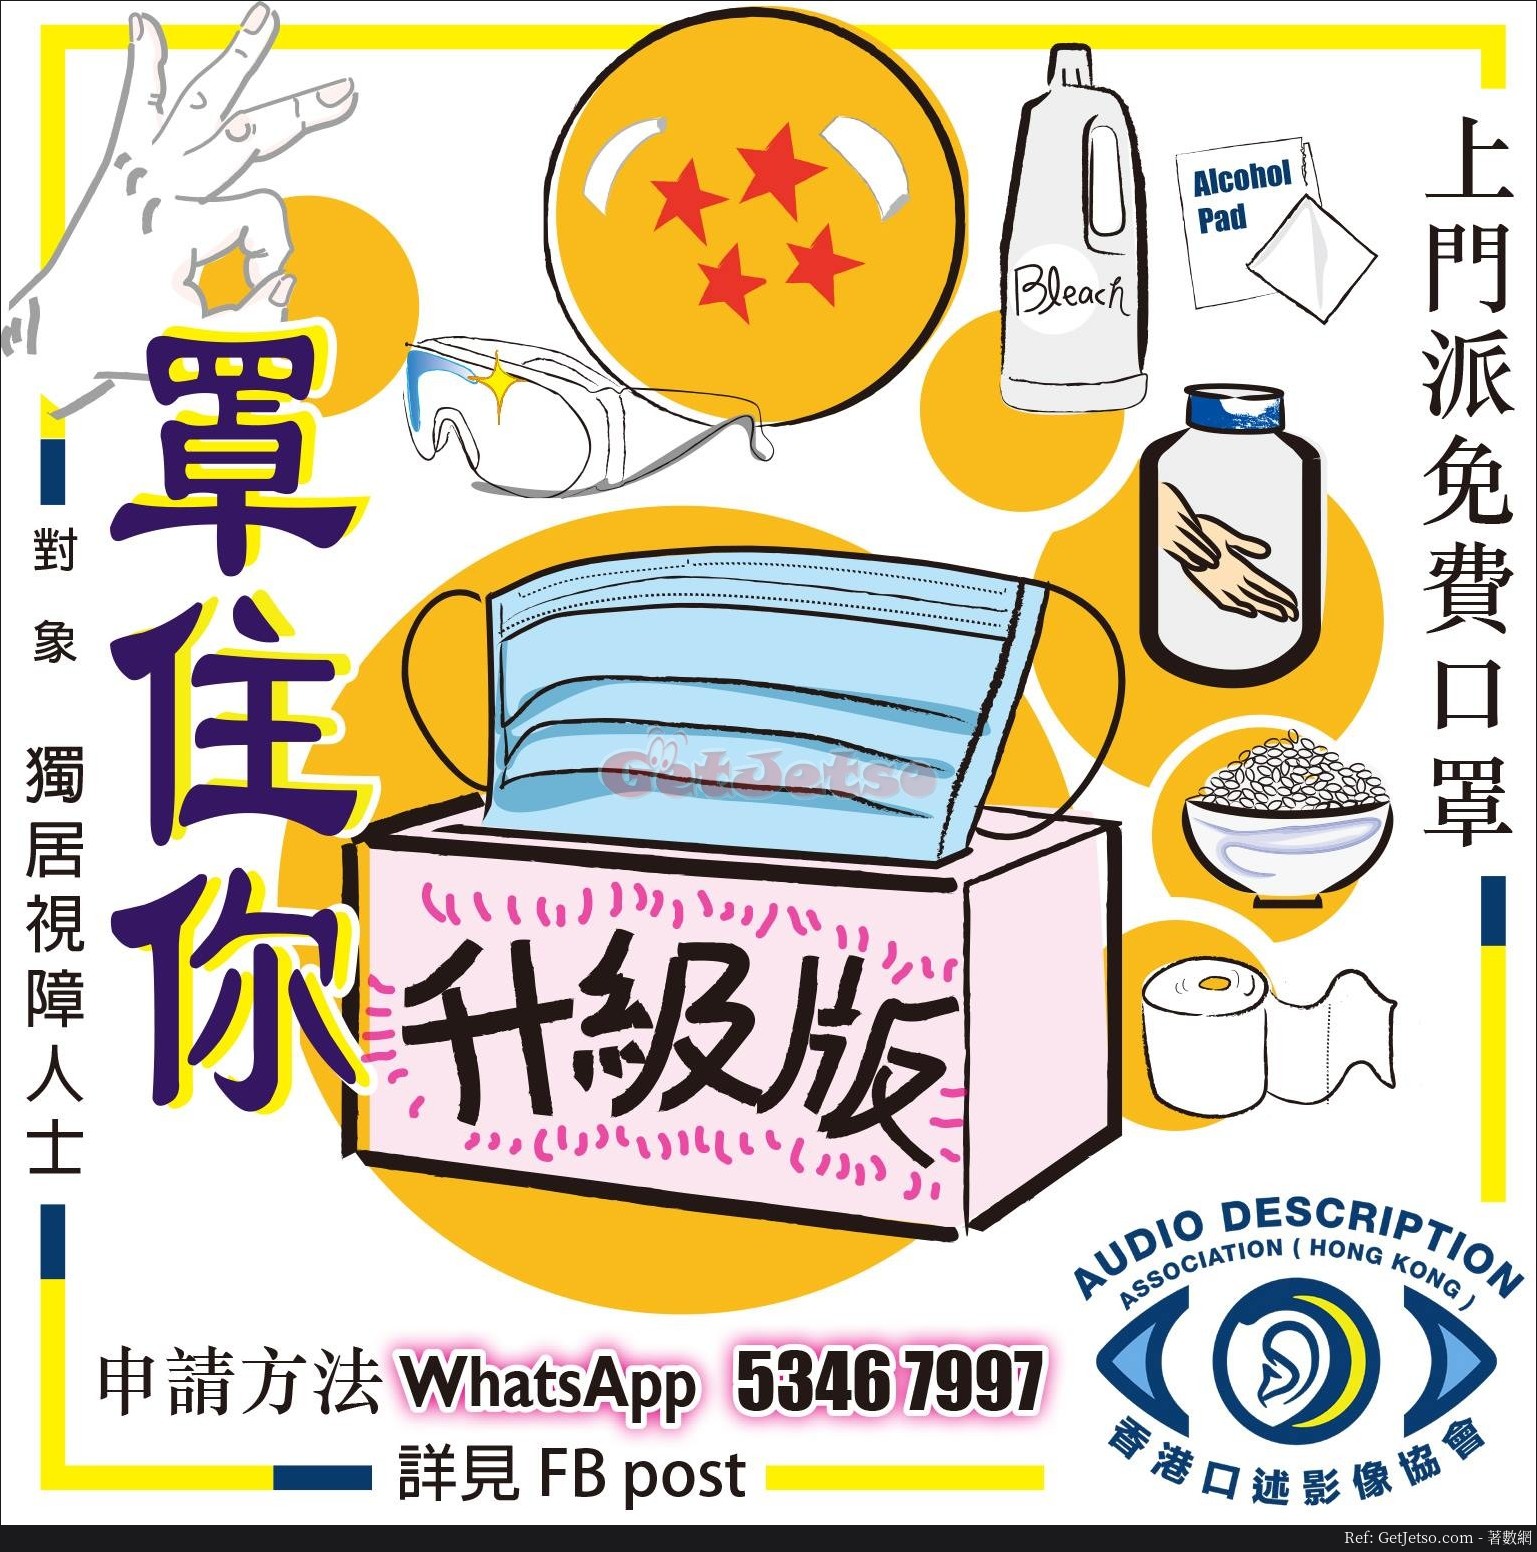 免費上門派發口罩、消毒搓手液比視障人士@香港口述影像協會圖片1